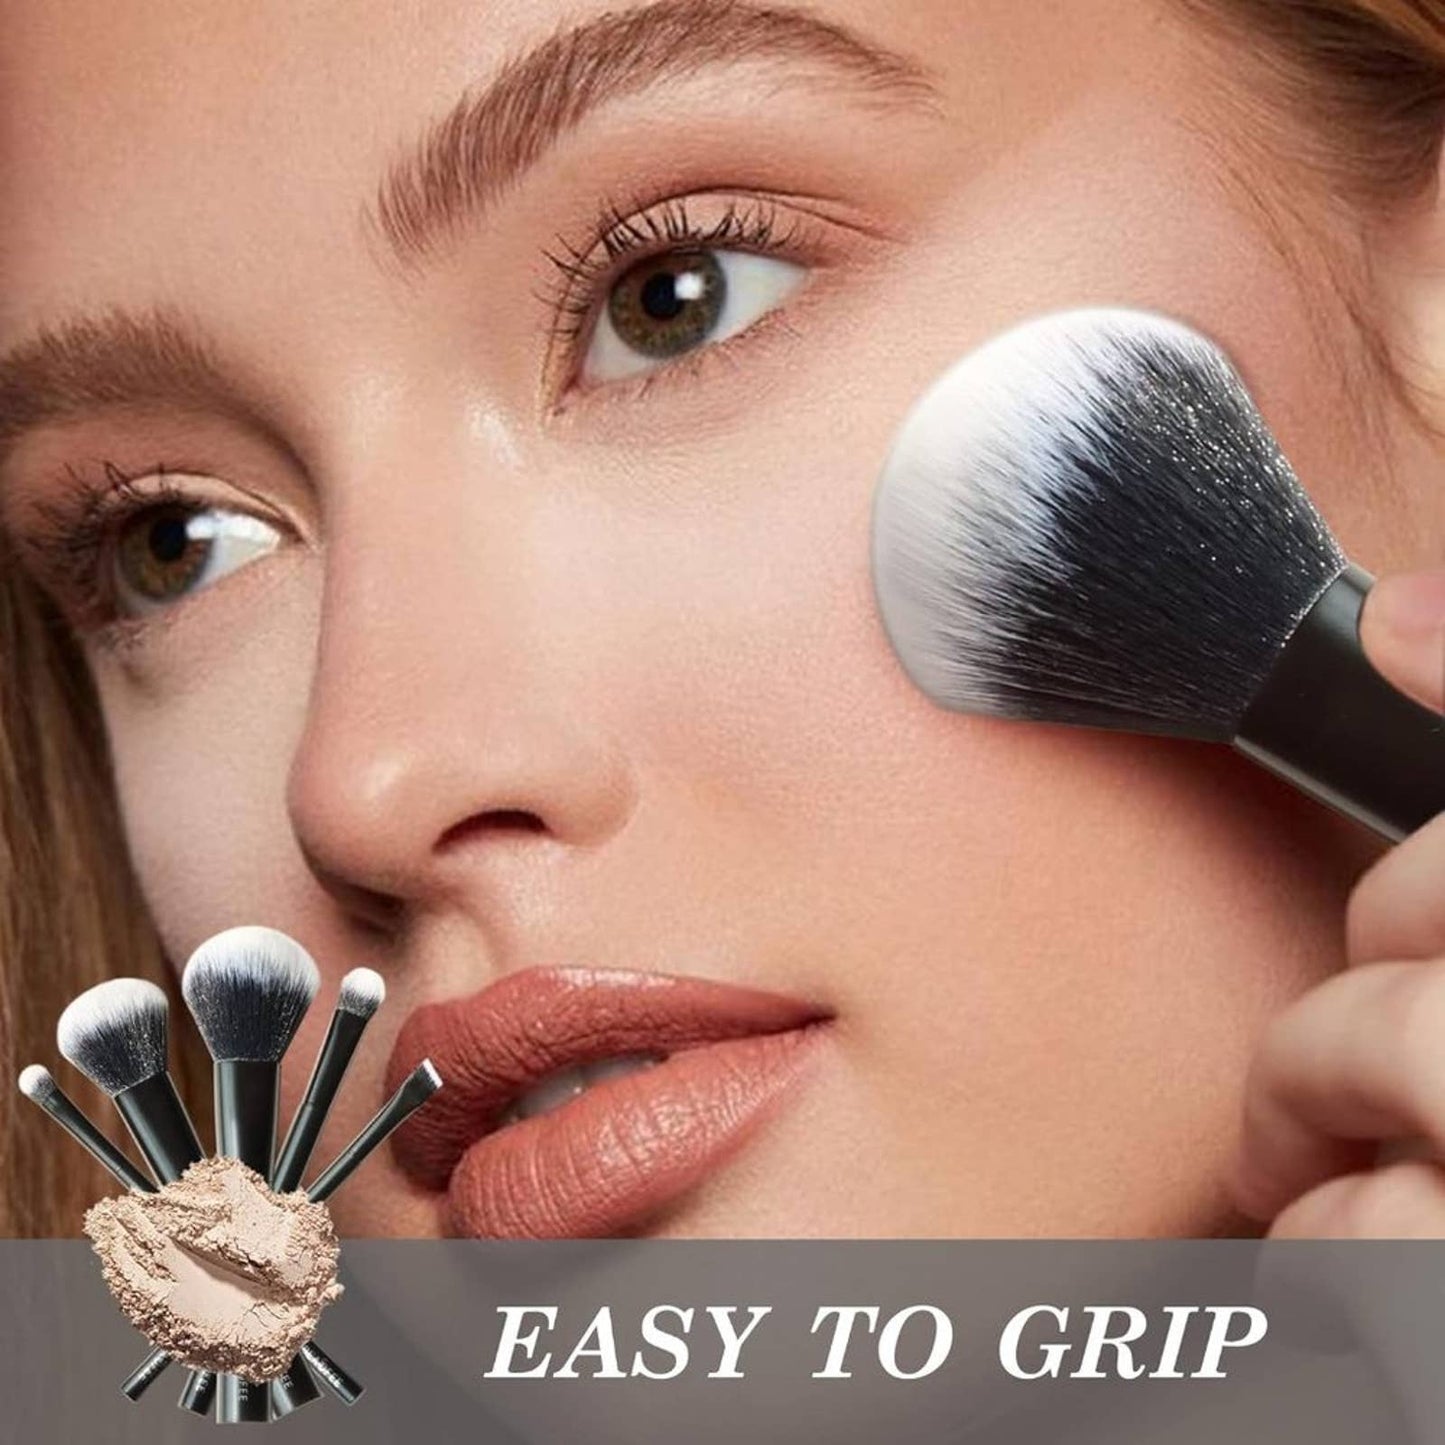 Blush Brushes For Makeup, Makeup Brush Set 5 Pcs, Premium Synthetic Blush Brush